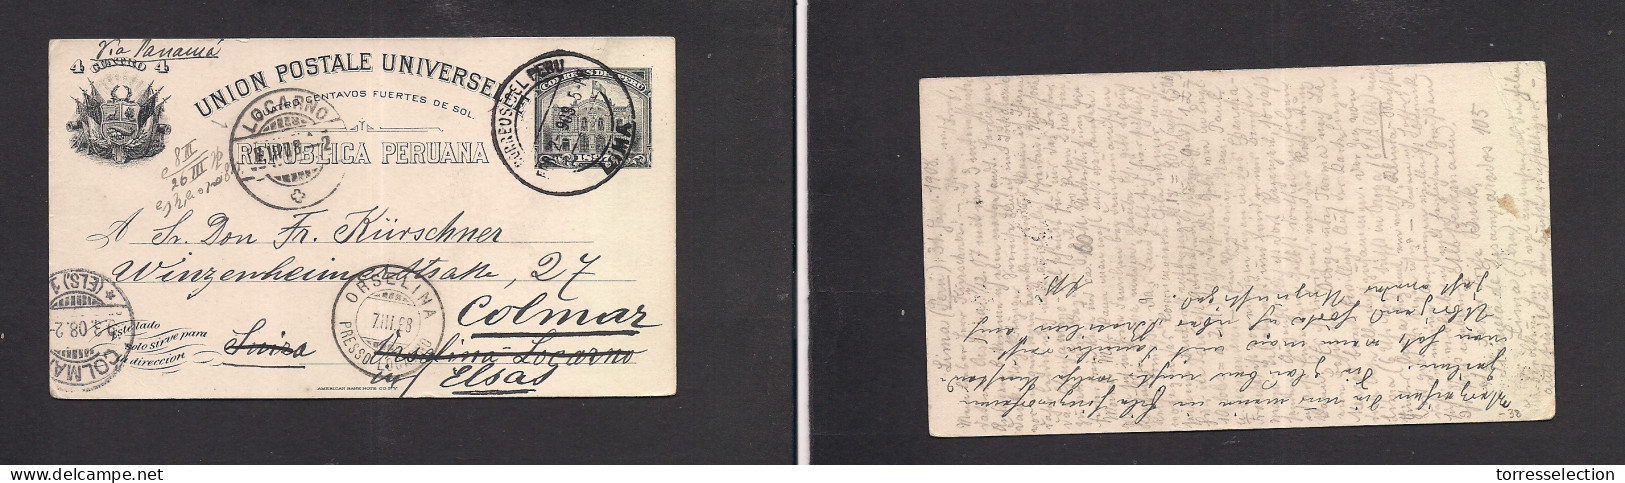 PERU. 1908 (31 Jan) Lima - Colmar, Switzerland (7 March) 4c Black Stat Card. Fine Used Via Panama. - Perú